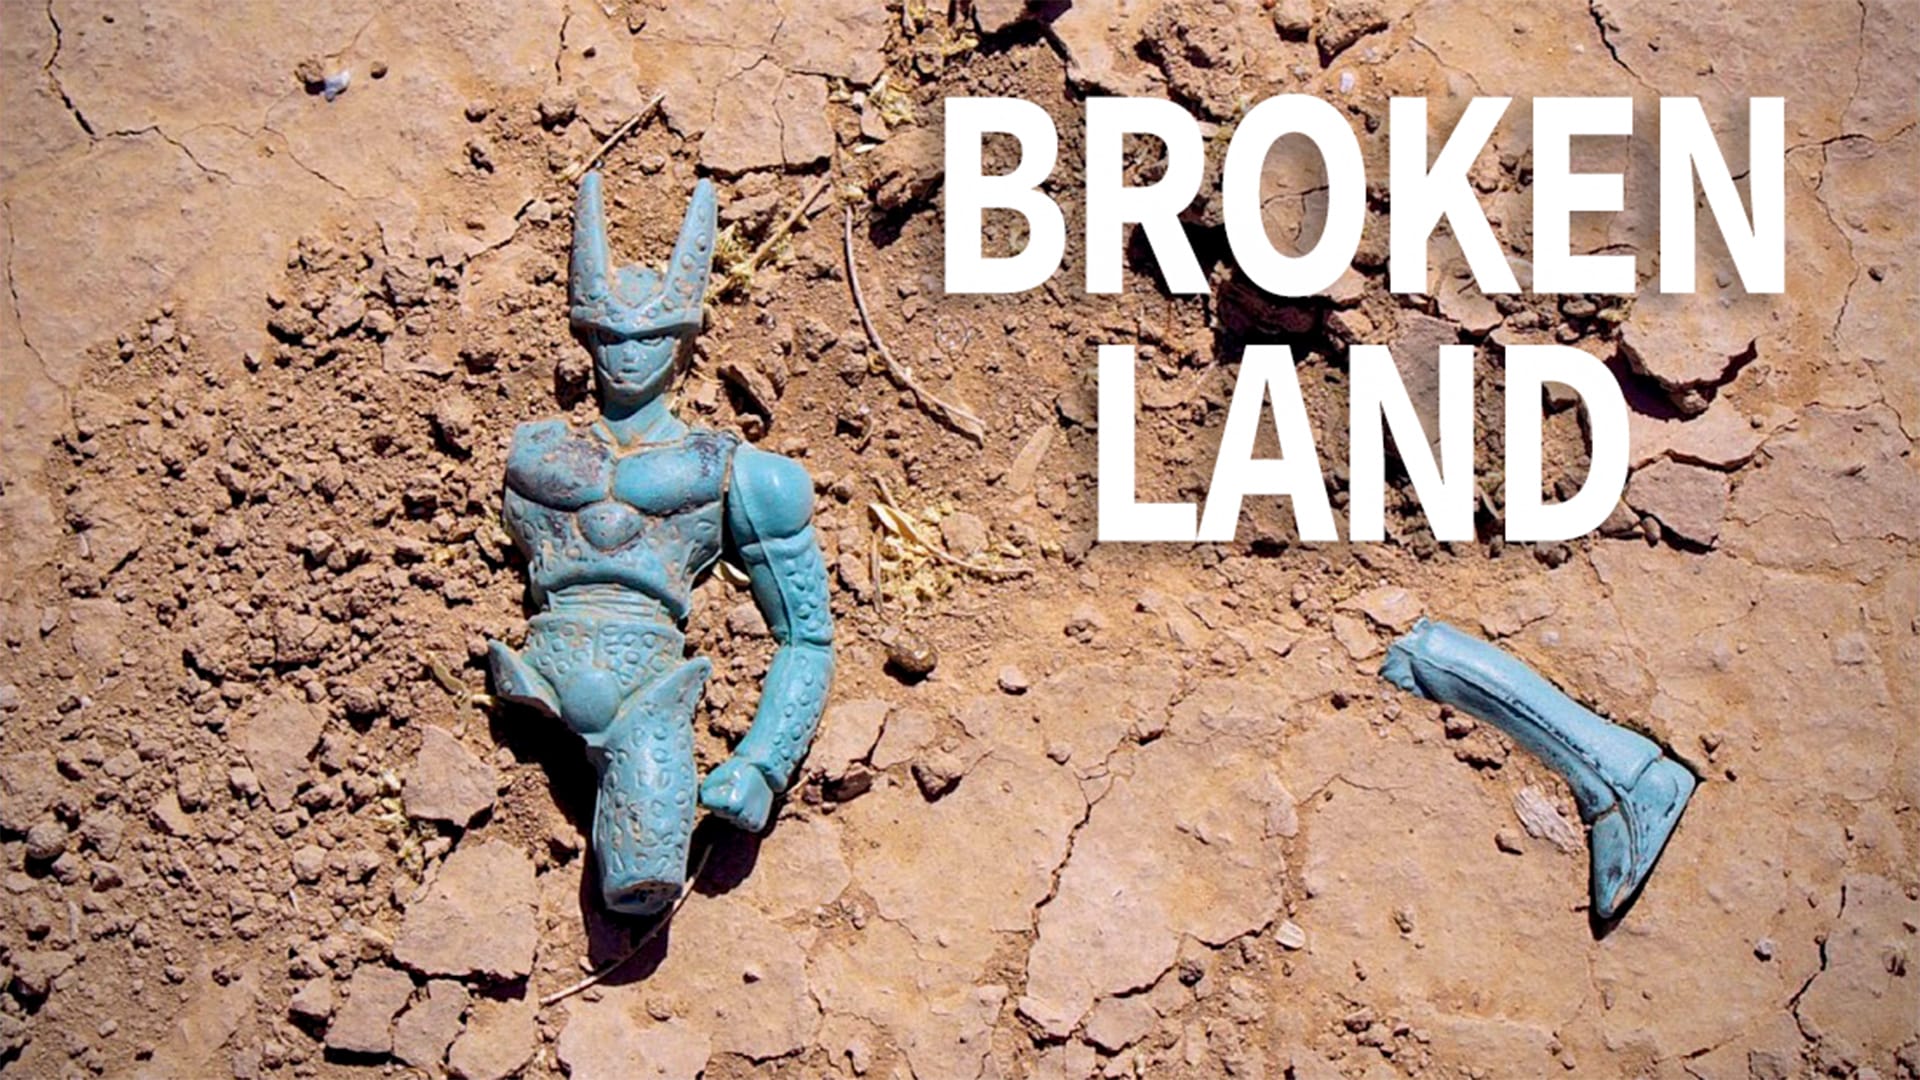 Broken Land